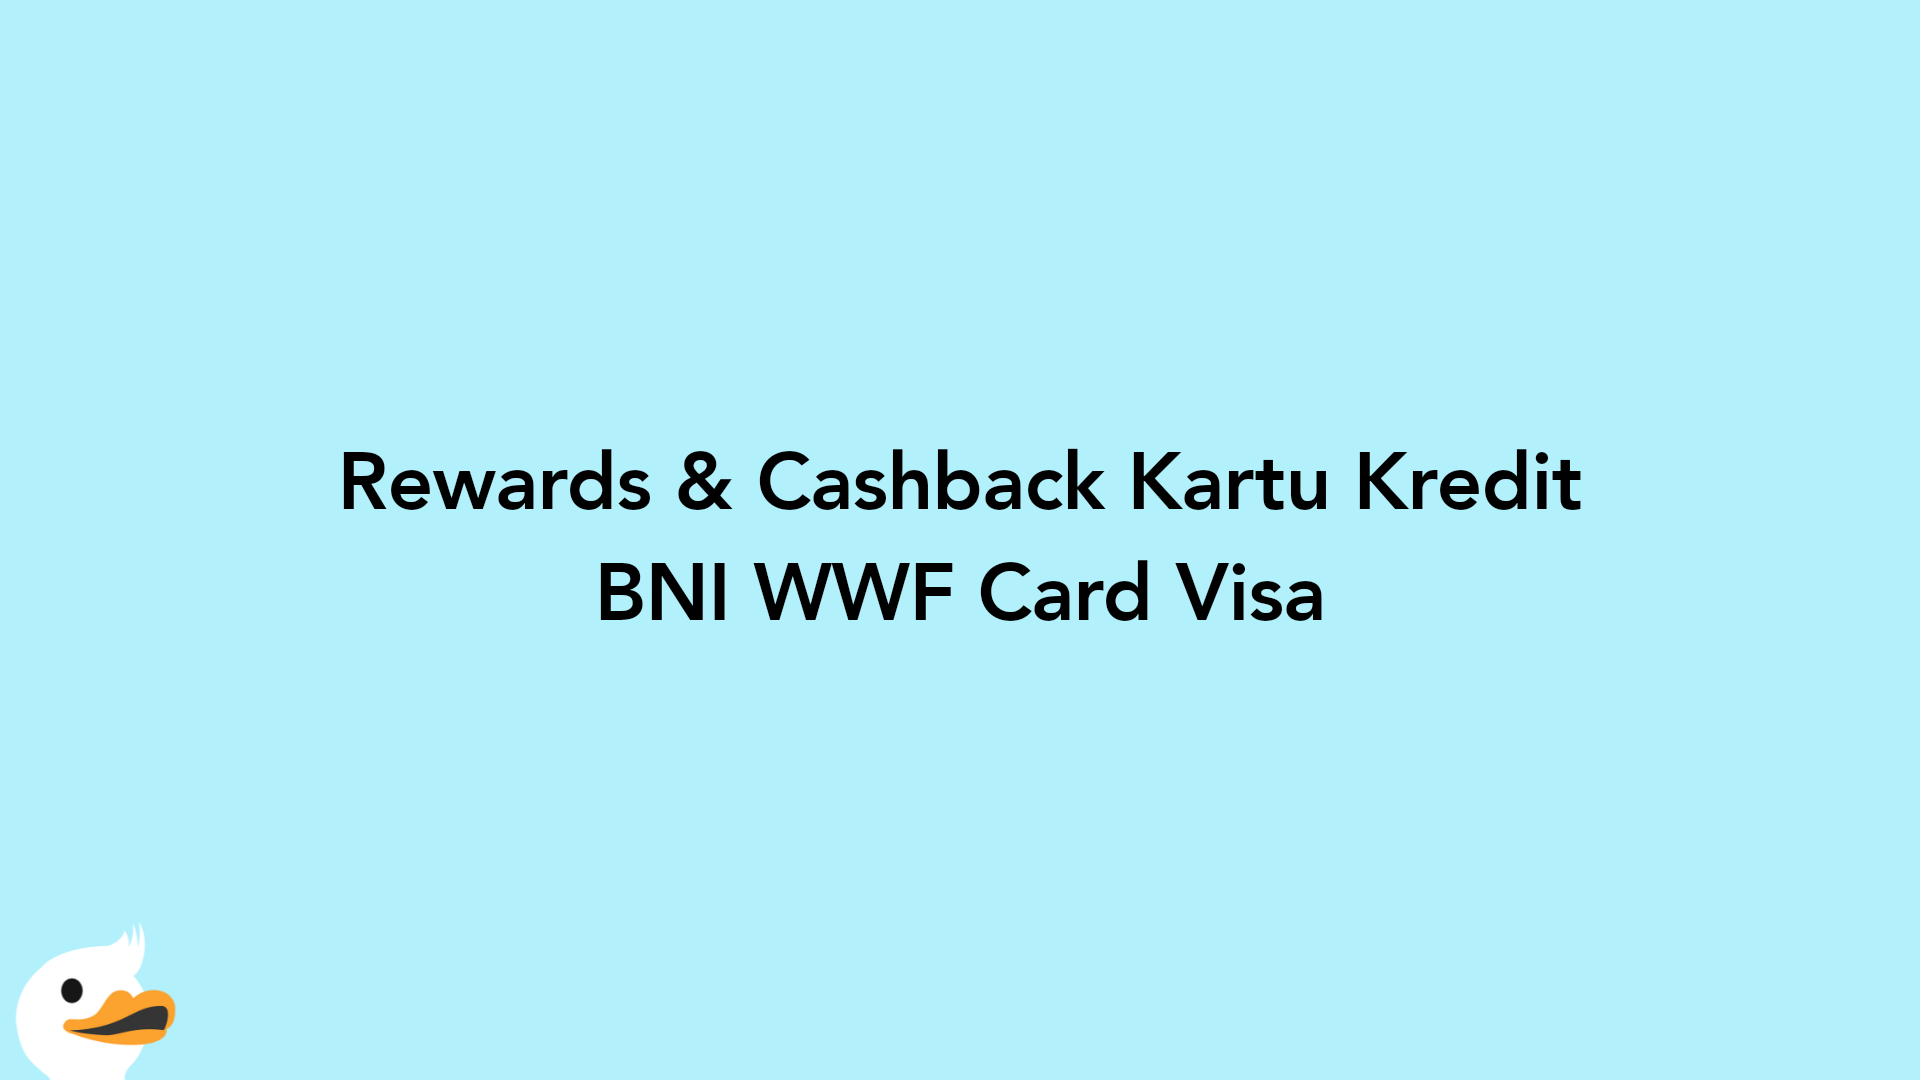 Rewards & Cashback Kartu Kredit BNI WWF Card Visa